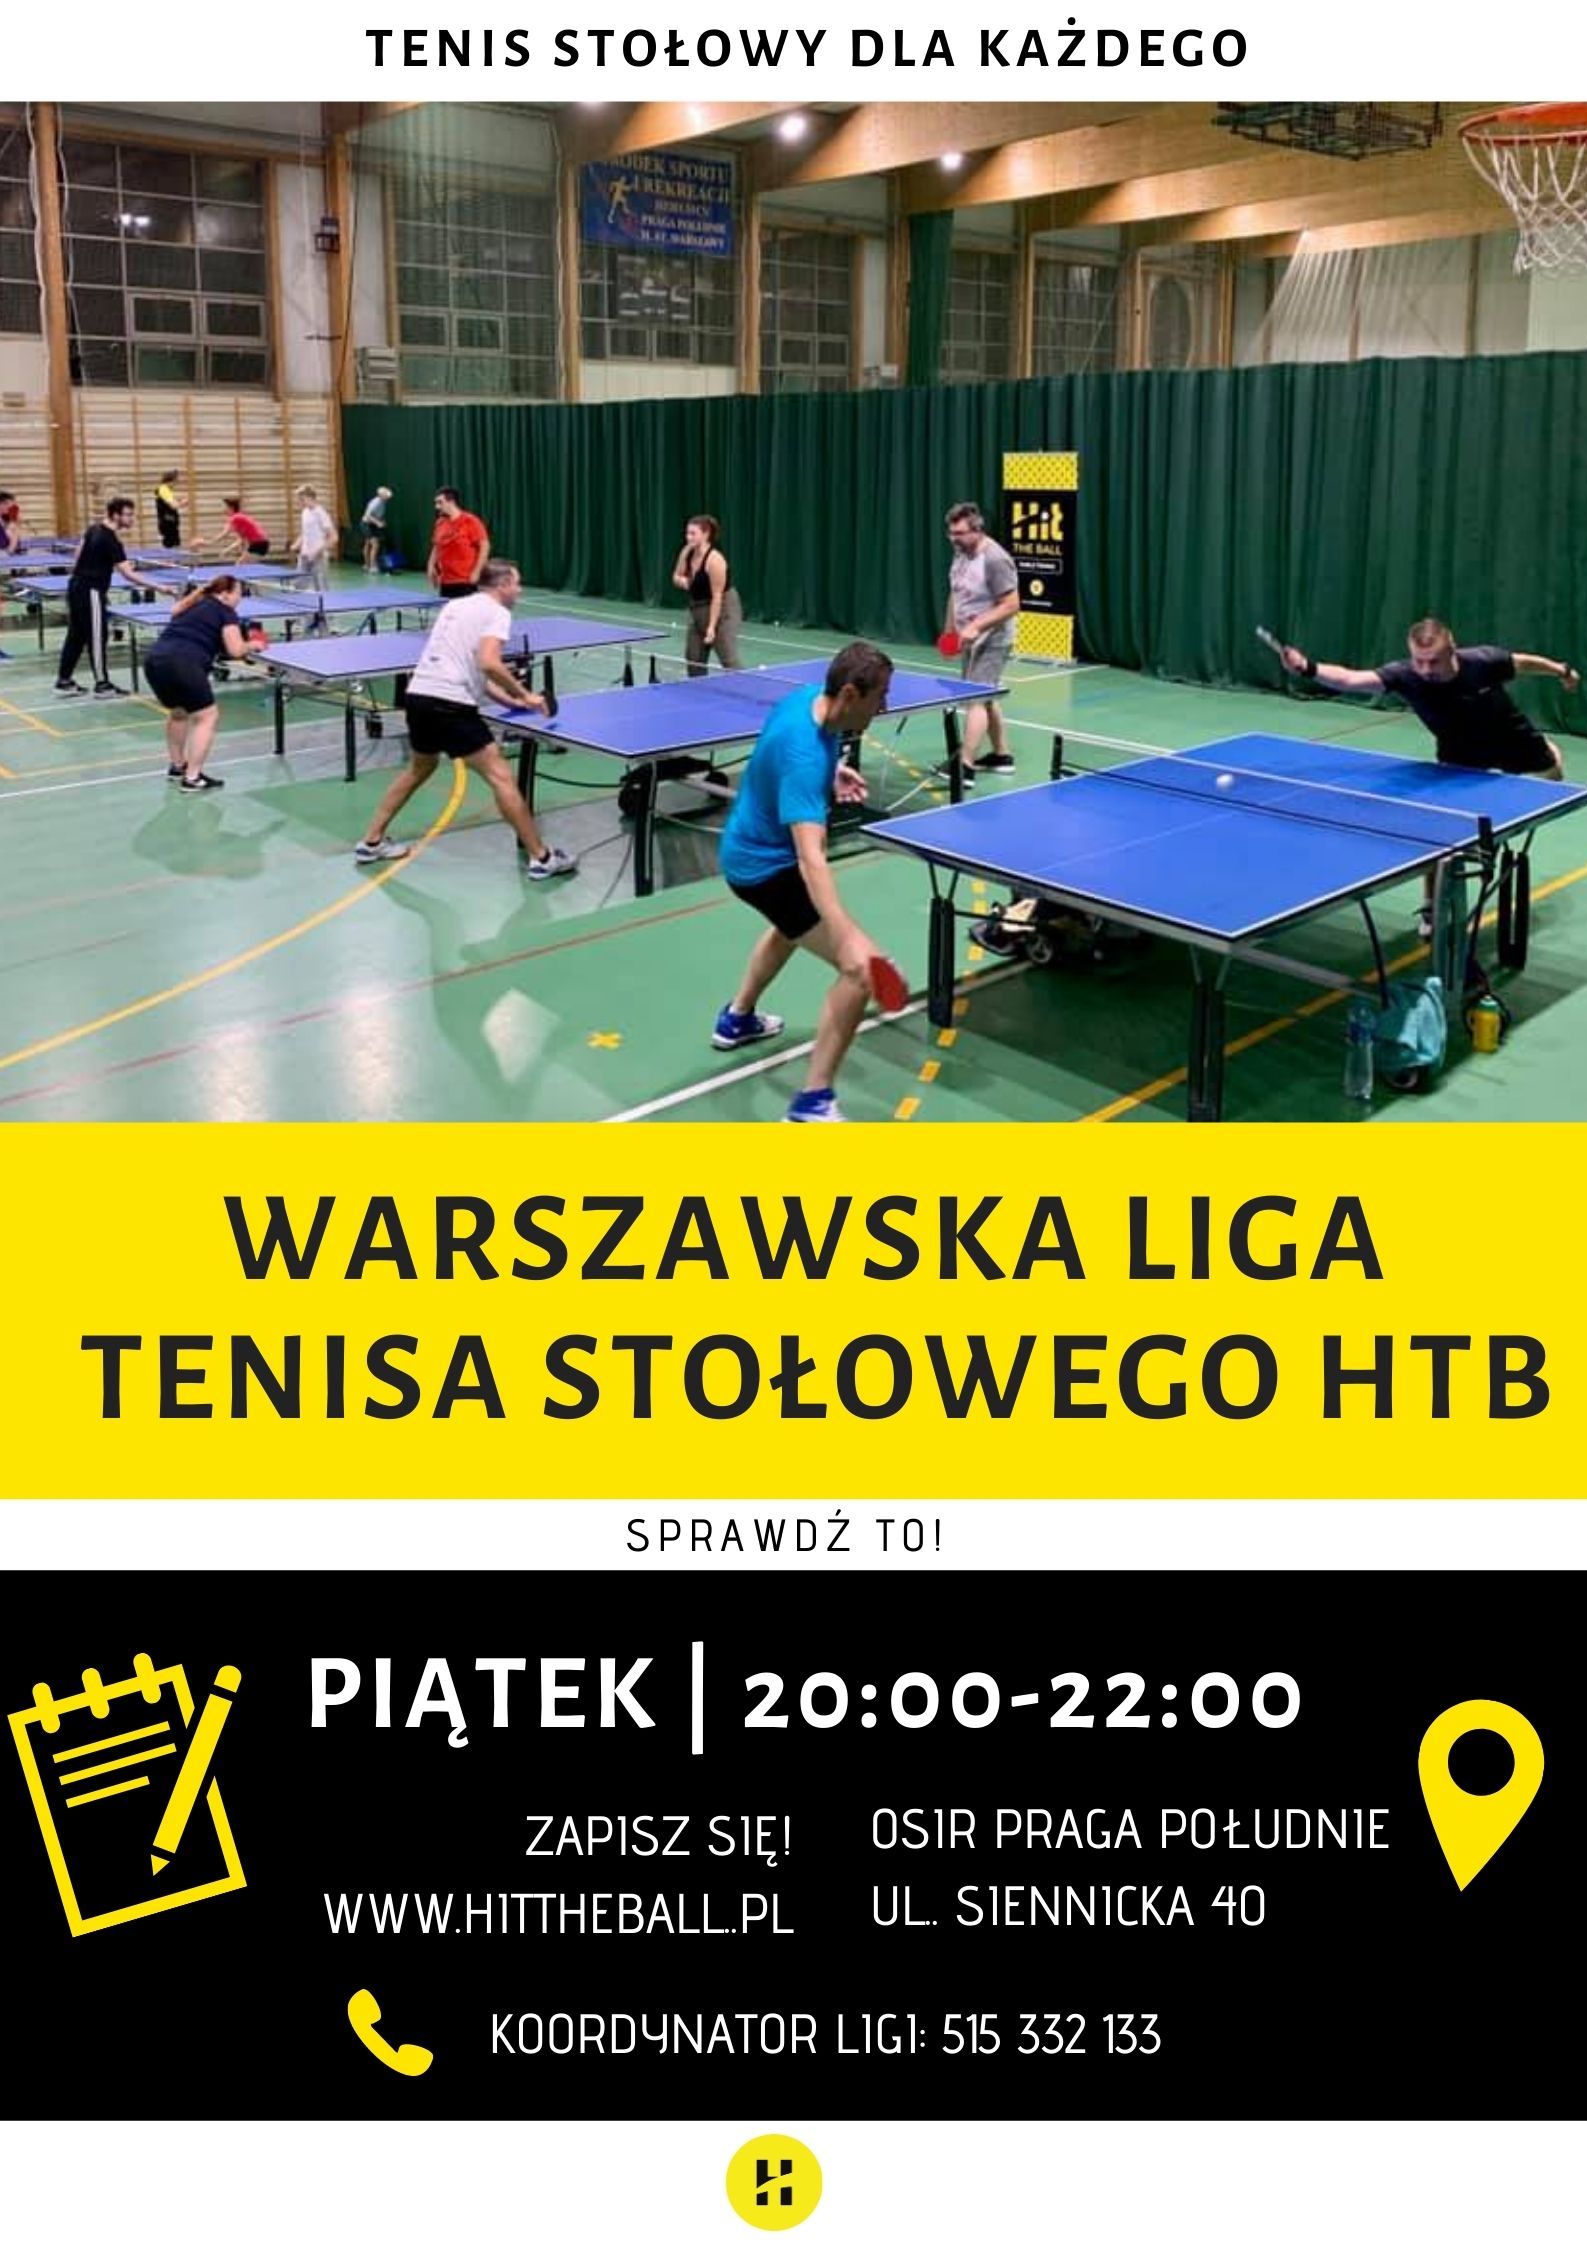 Plakat turnieju Warszawa Liga Tenisa Stołowego 2020 - 3 termin